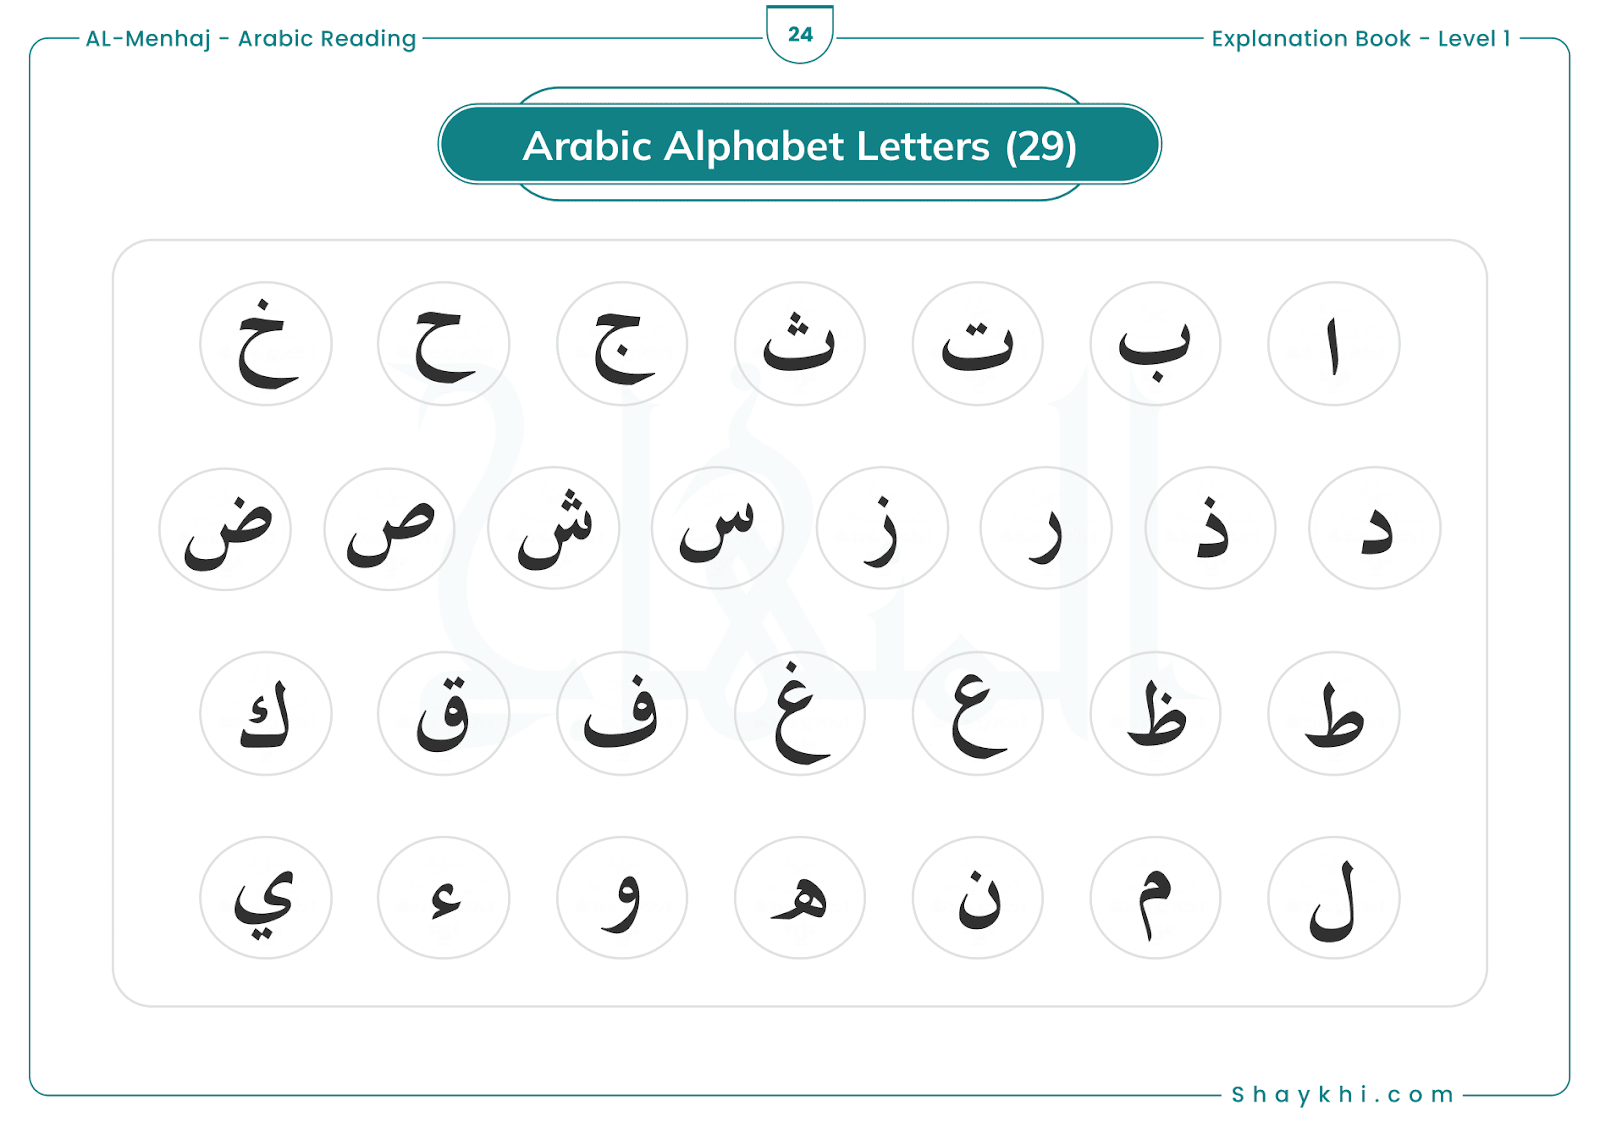 1. Arabic Alphabet Letters: